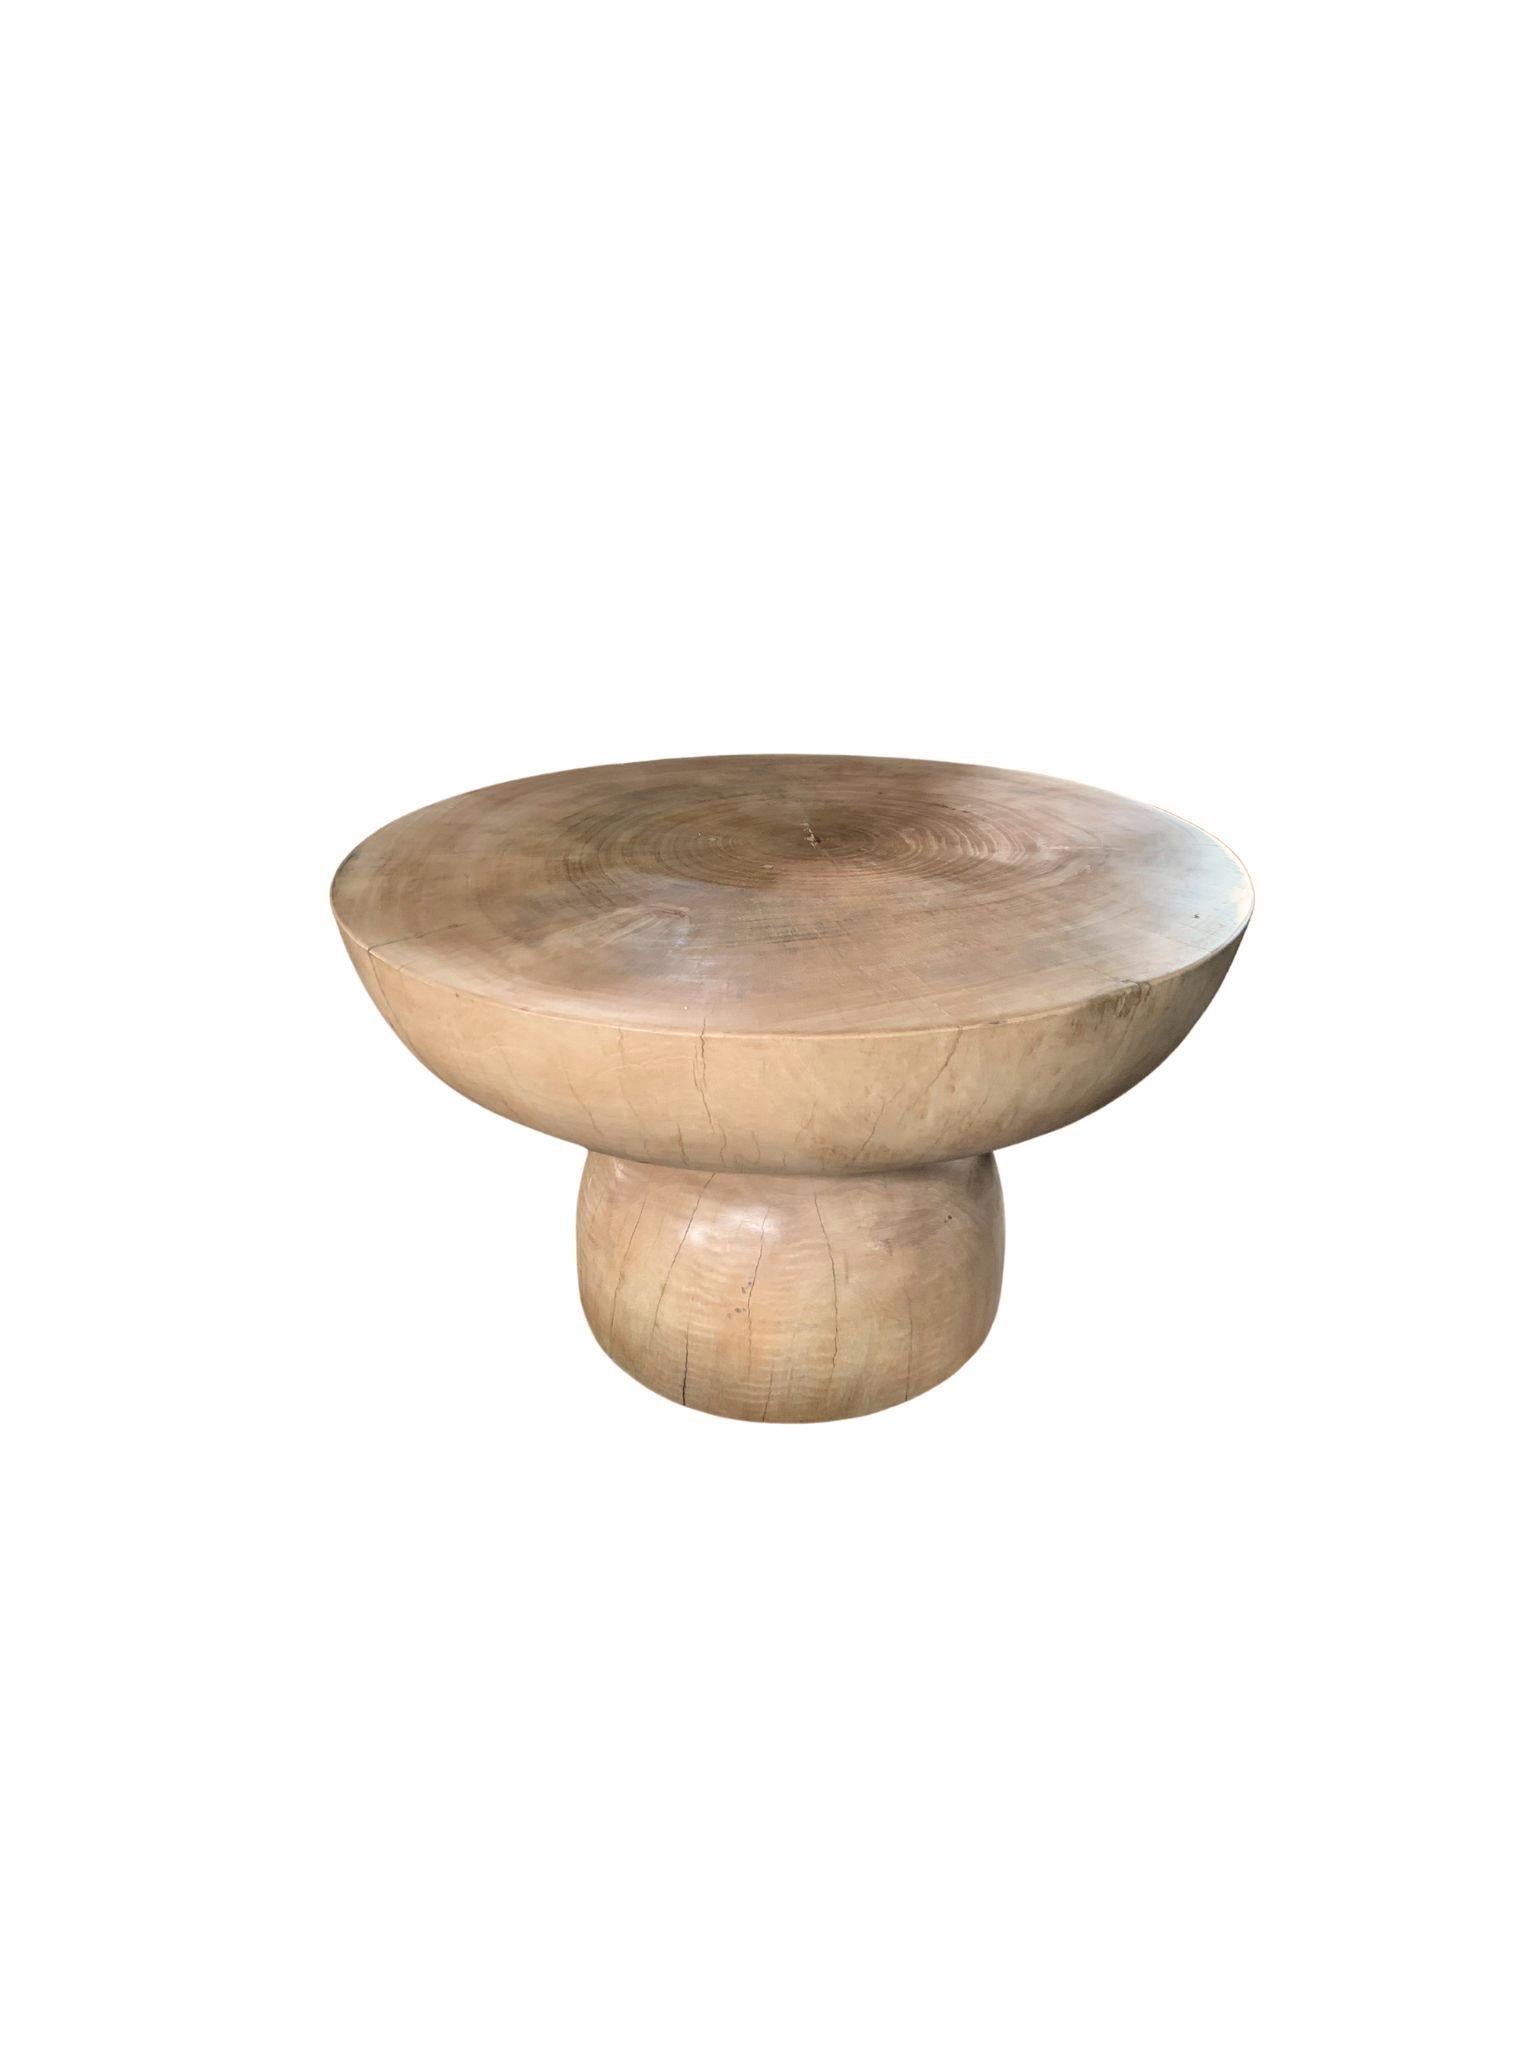 Une table d'appoint ronde merveilleusement sculpturale avec une finition sablée. Son pigment neutre et sa texture bois en font un produit parfait pour tout espace. Elle présente une base effilée et un grand plateau rond. Une pièce unique,